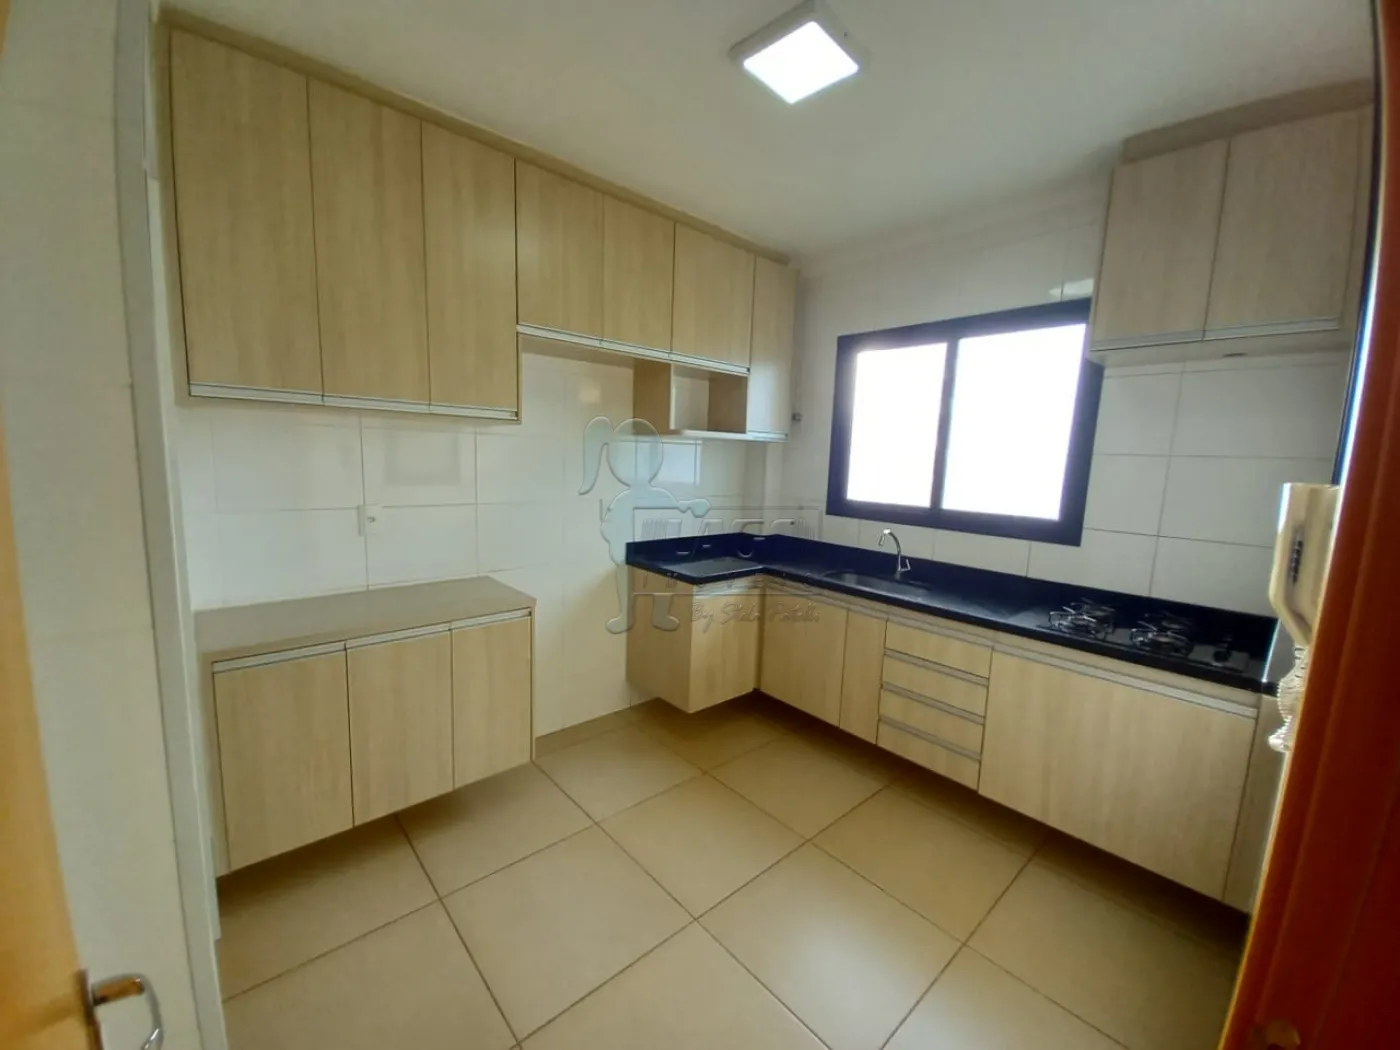 Alugar Apartamentos / Padrão em Ribeirão Preto R$ 3.300,00 - Foto 4